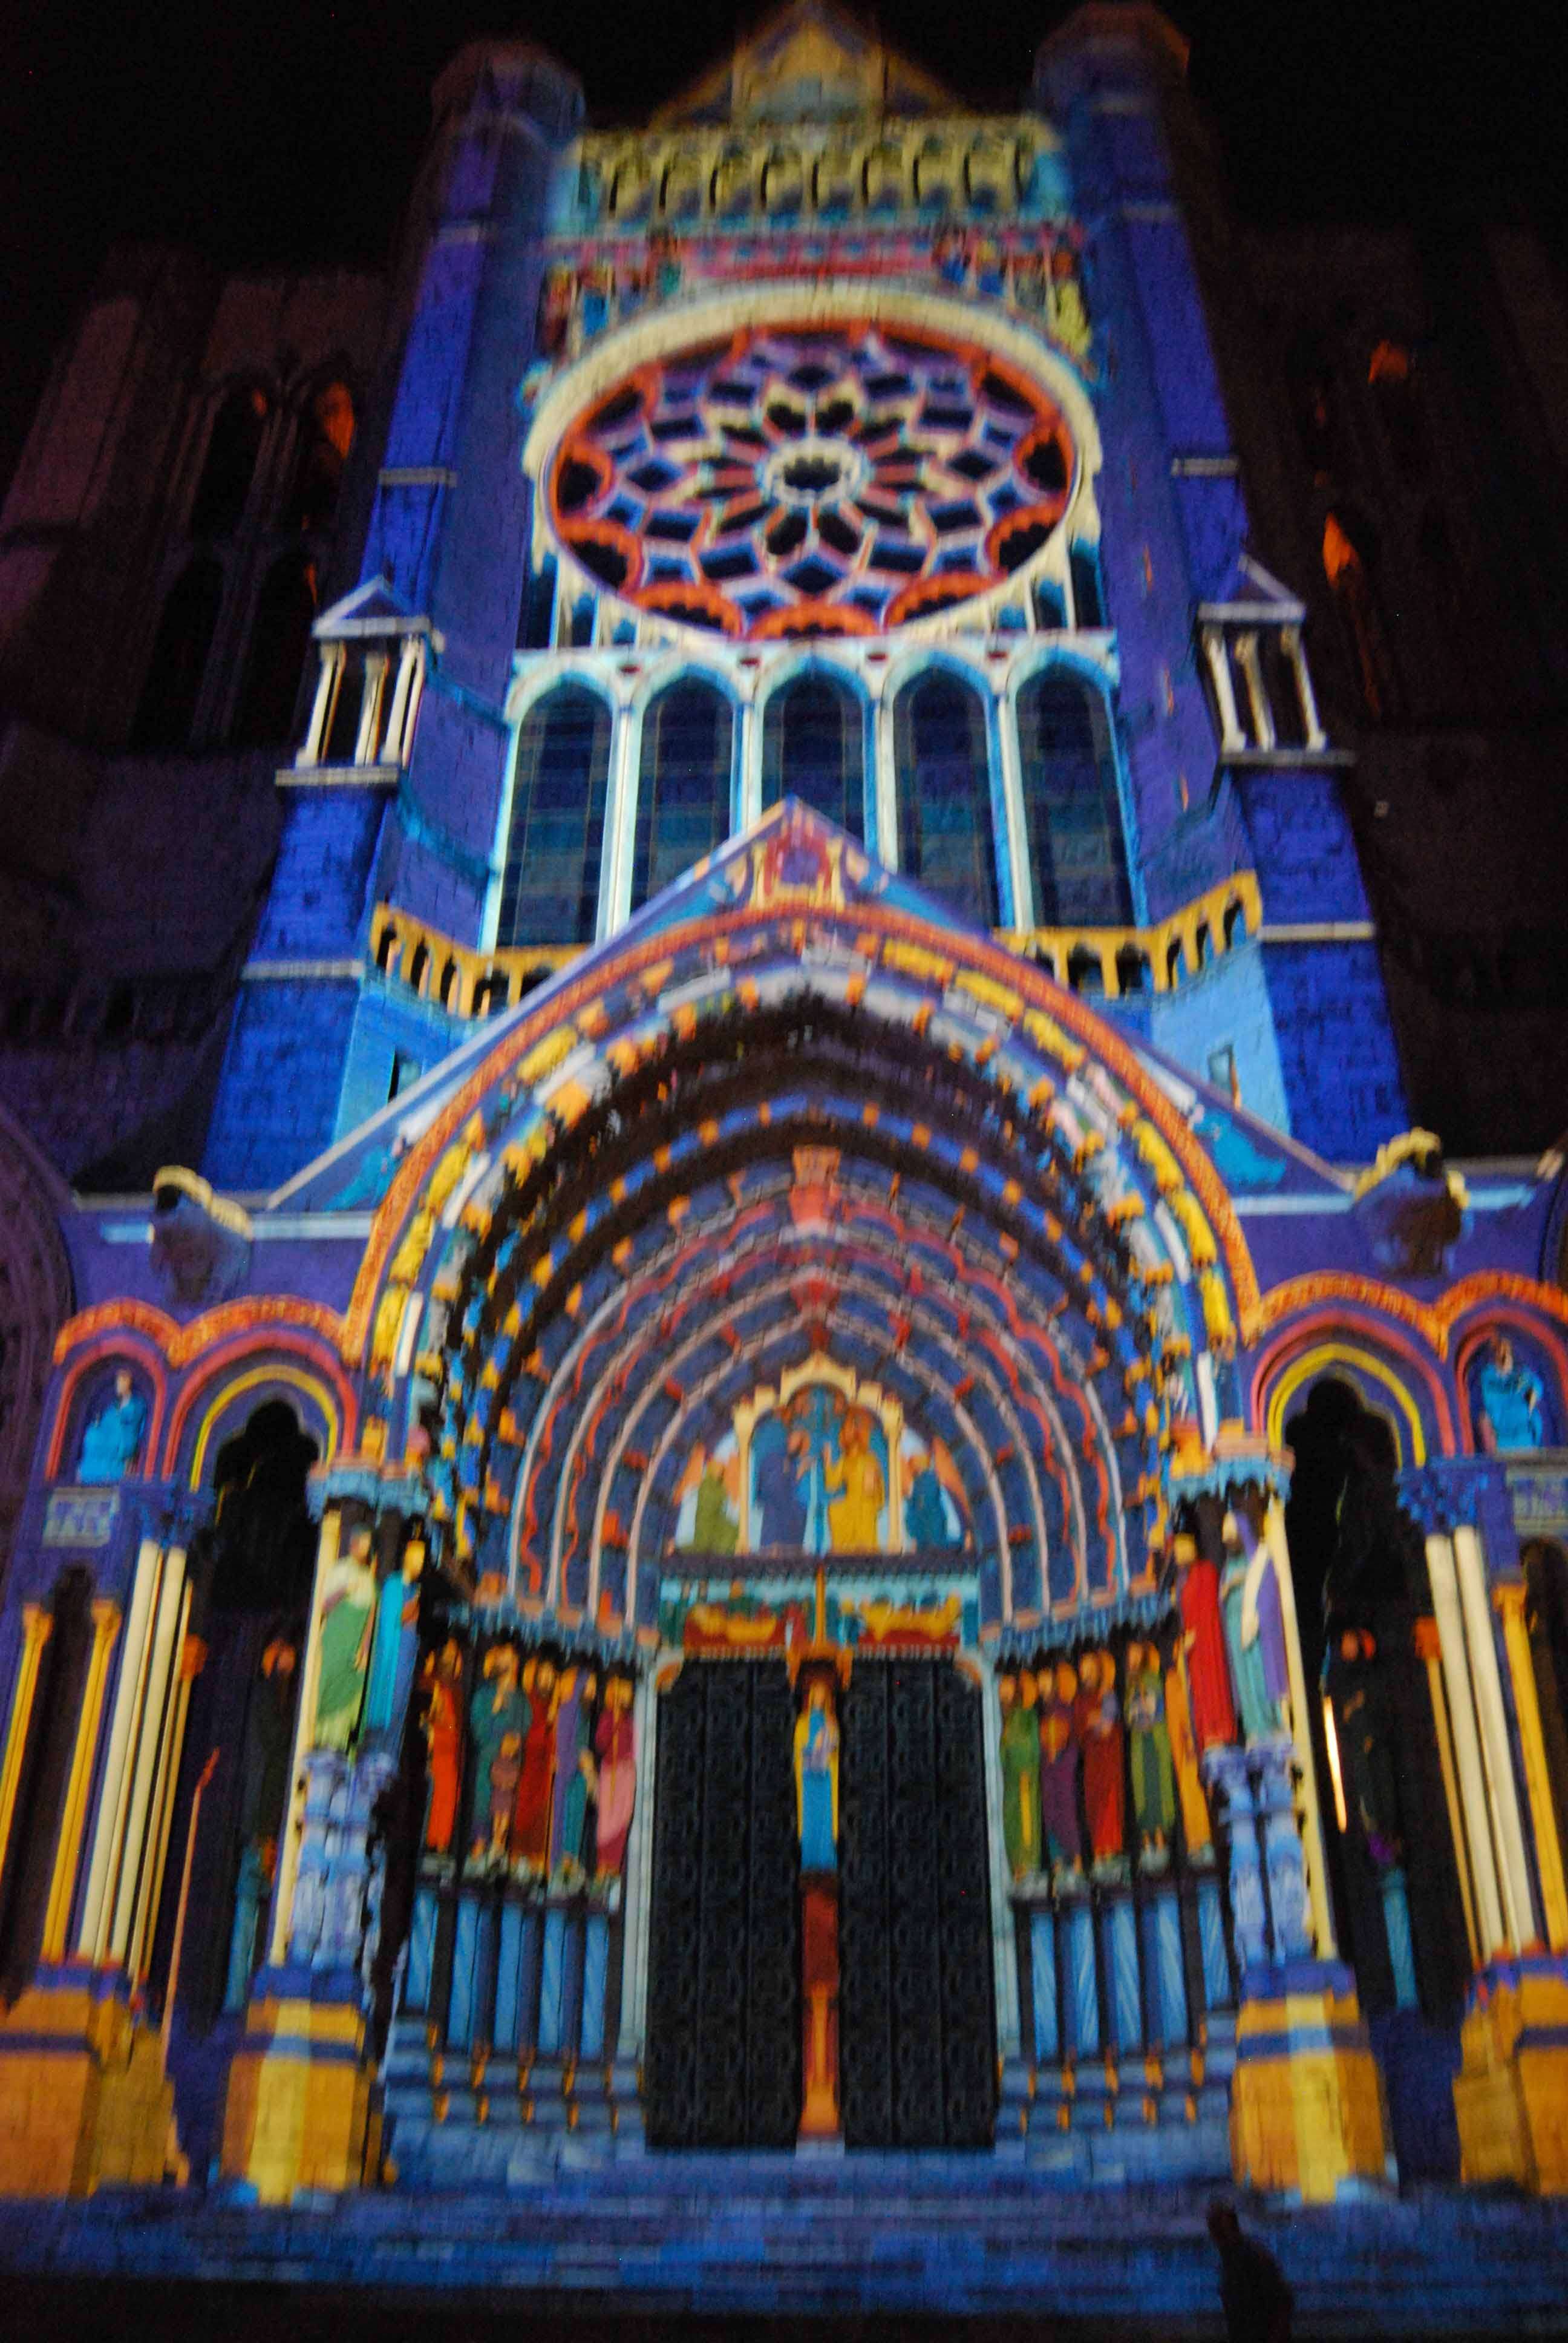 Chartres. Acceso, Alojamiento, Restaurantes y Actividades - Chartres: Arte, espiritualidad y esoterismo. (13)